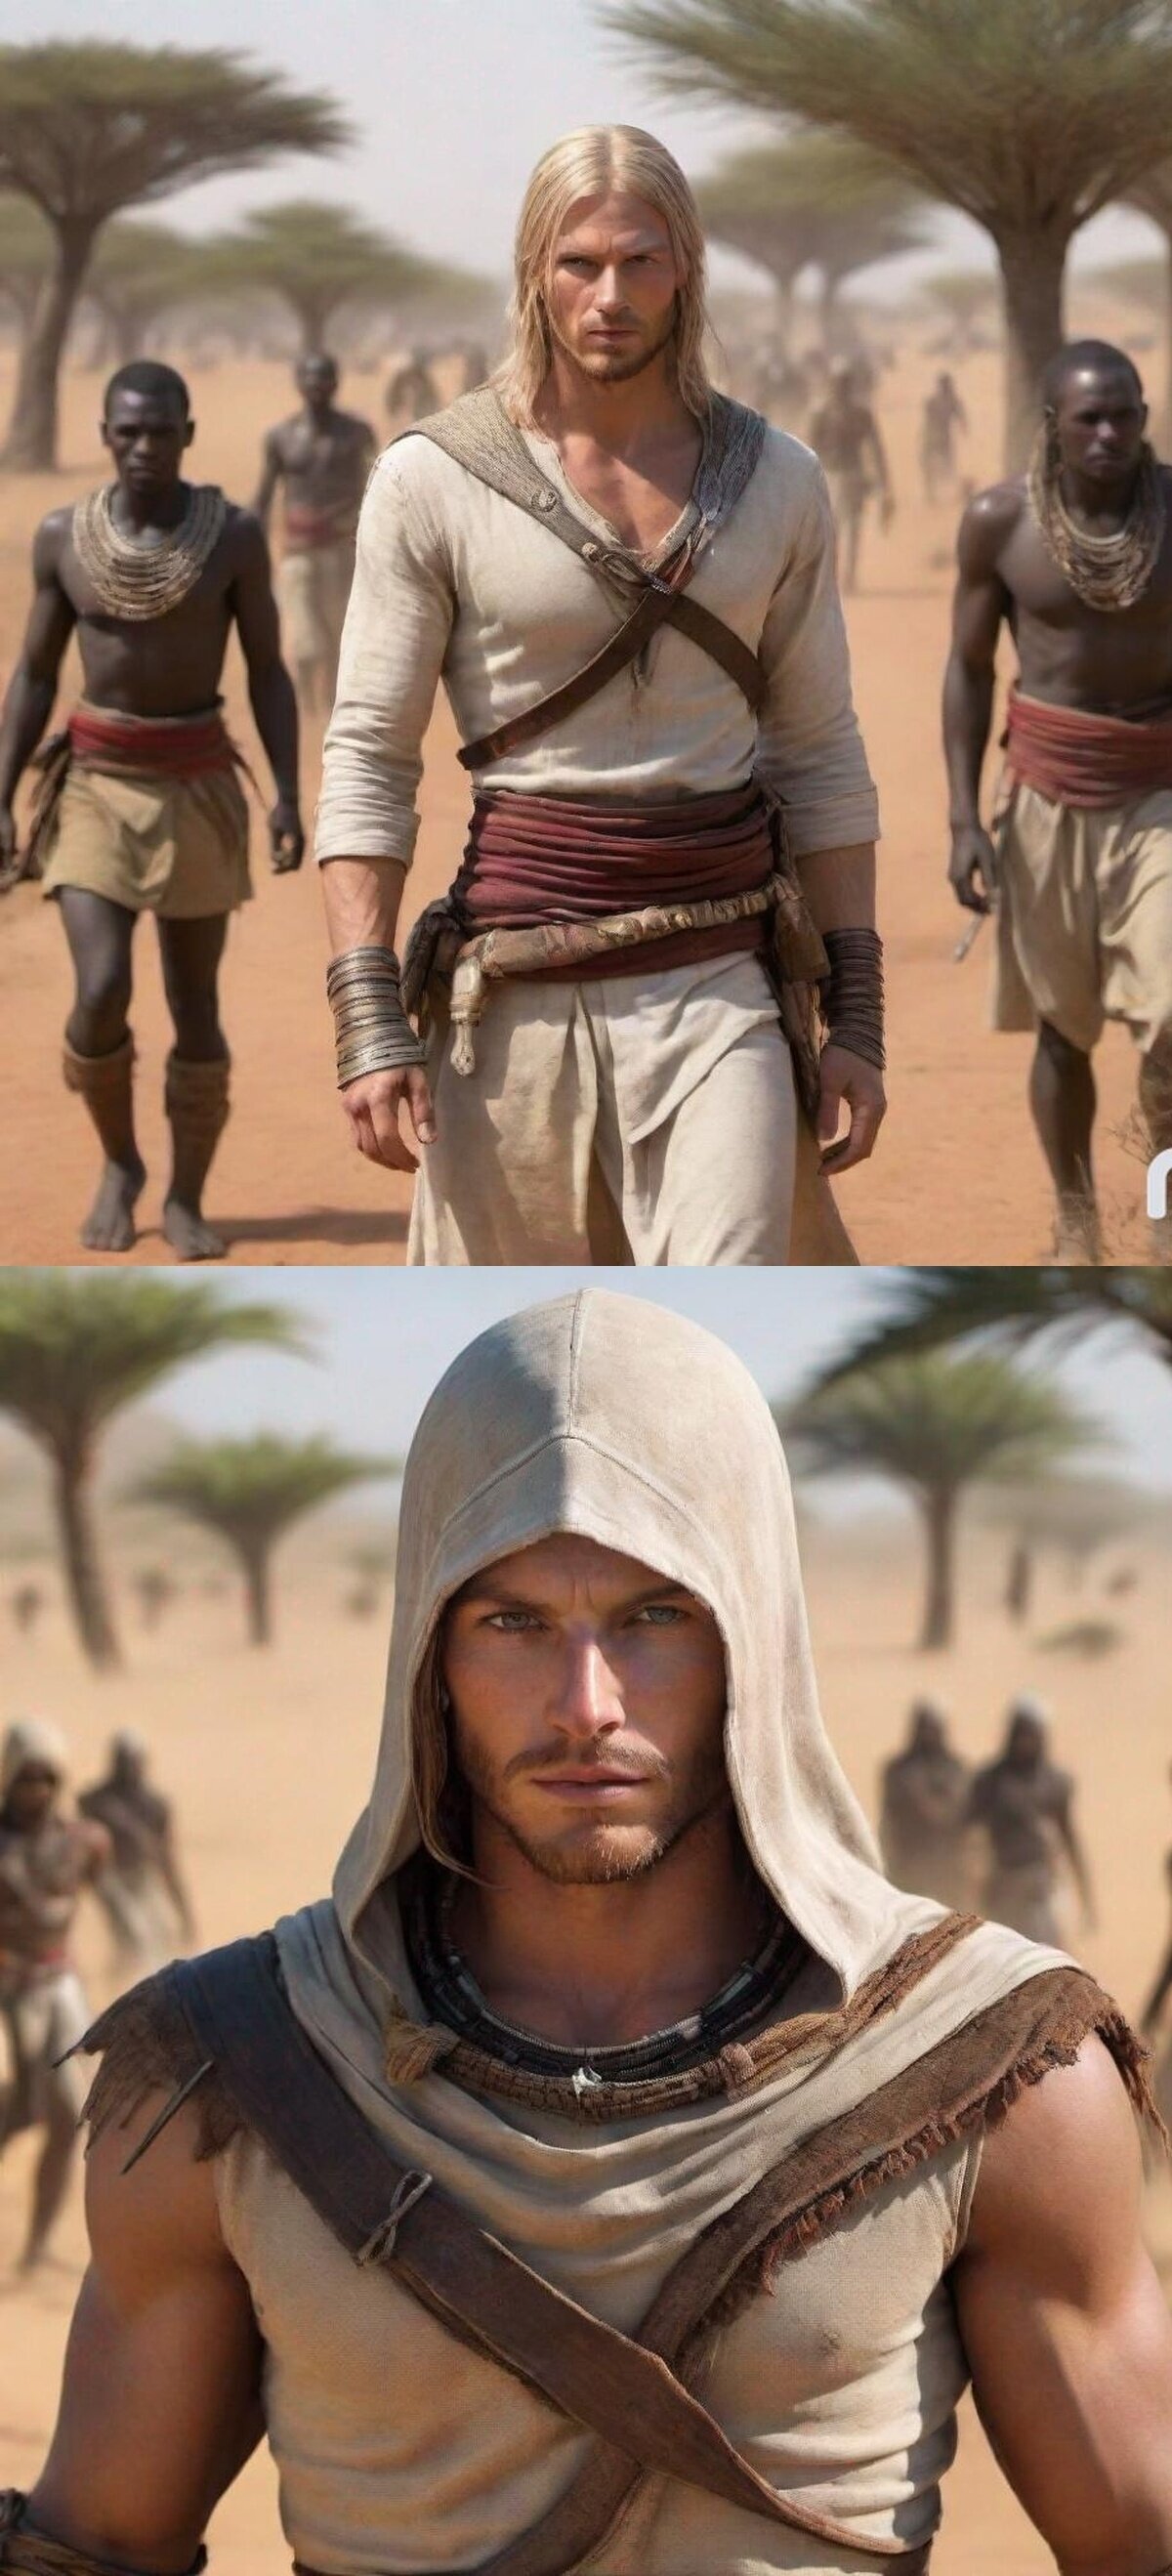 El día que Ubi anuncie un Assassin's Creed ambientado en África